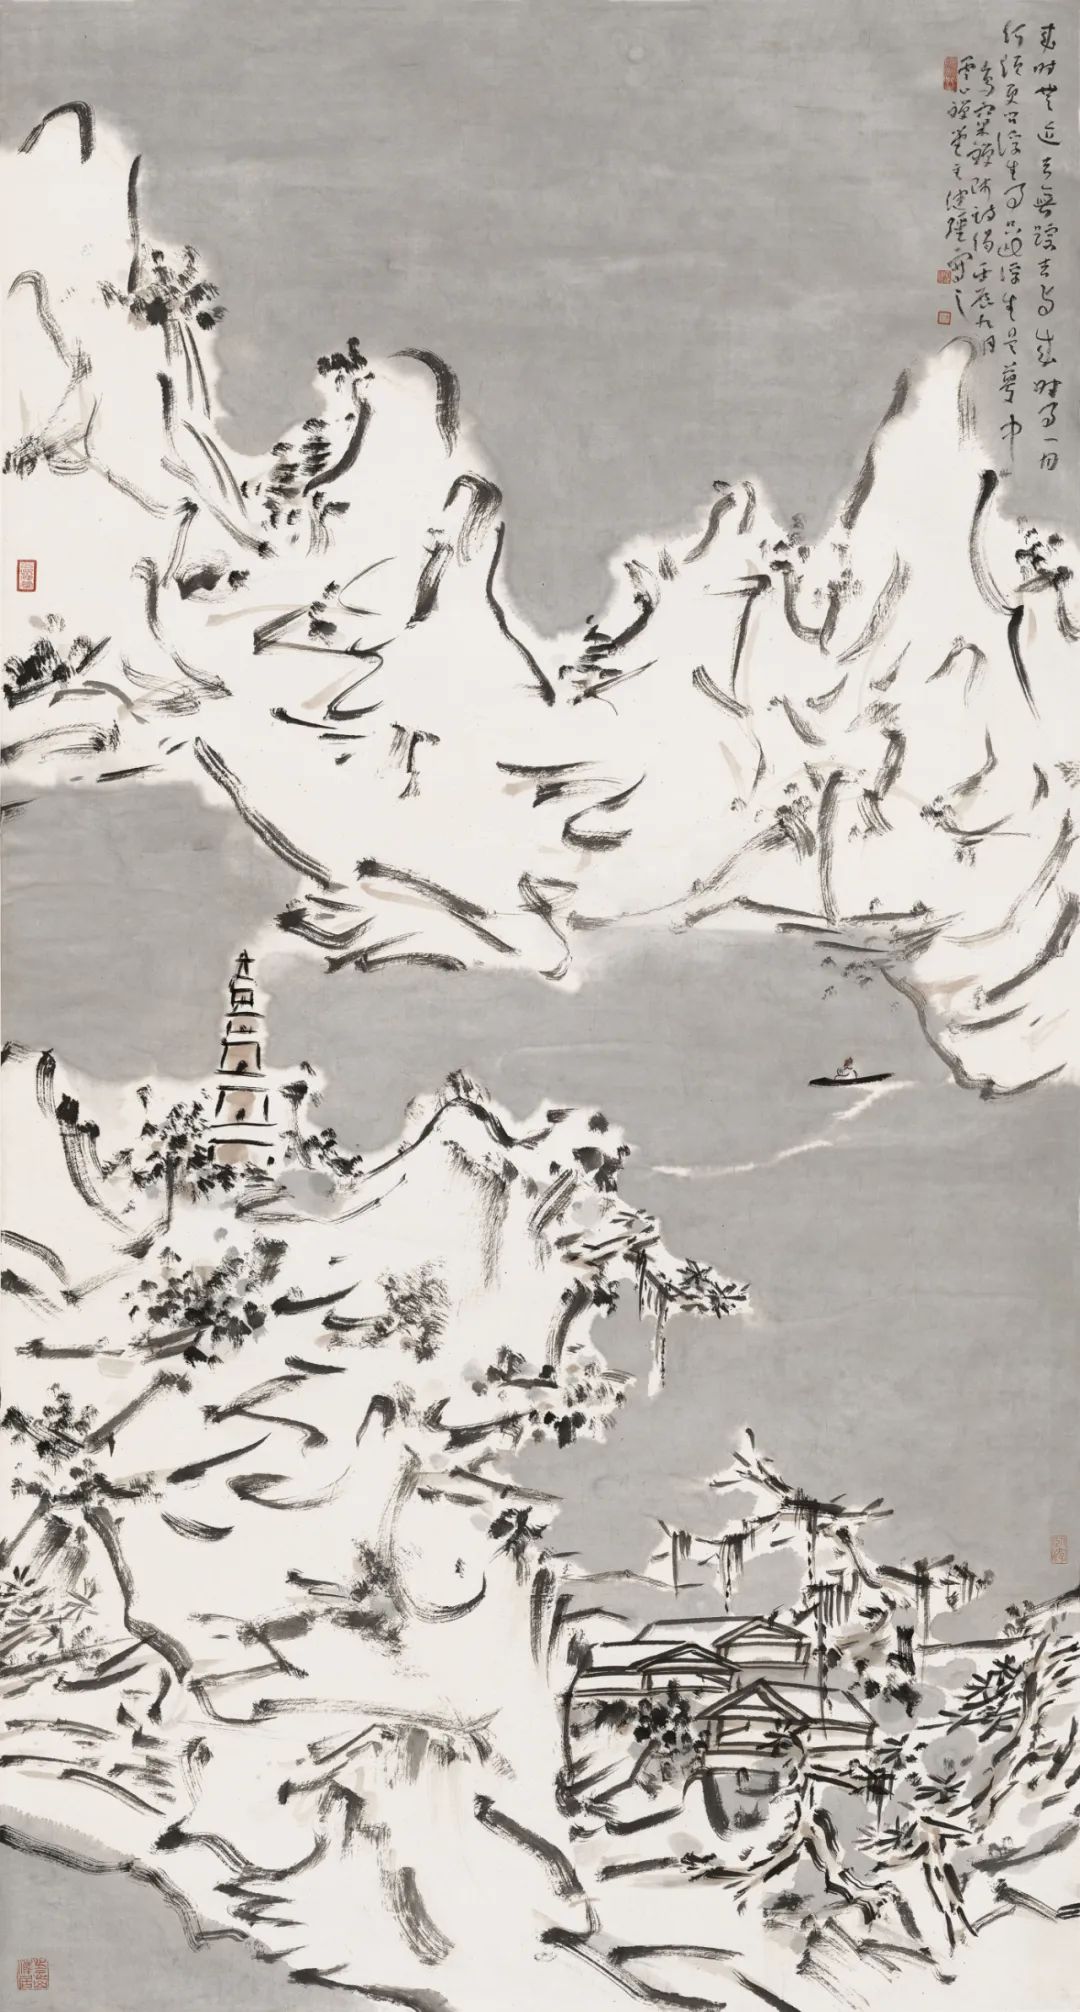 “光耀千里 · 李健强中国画作品展”将于9月6日在河南省美术馆开幕